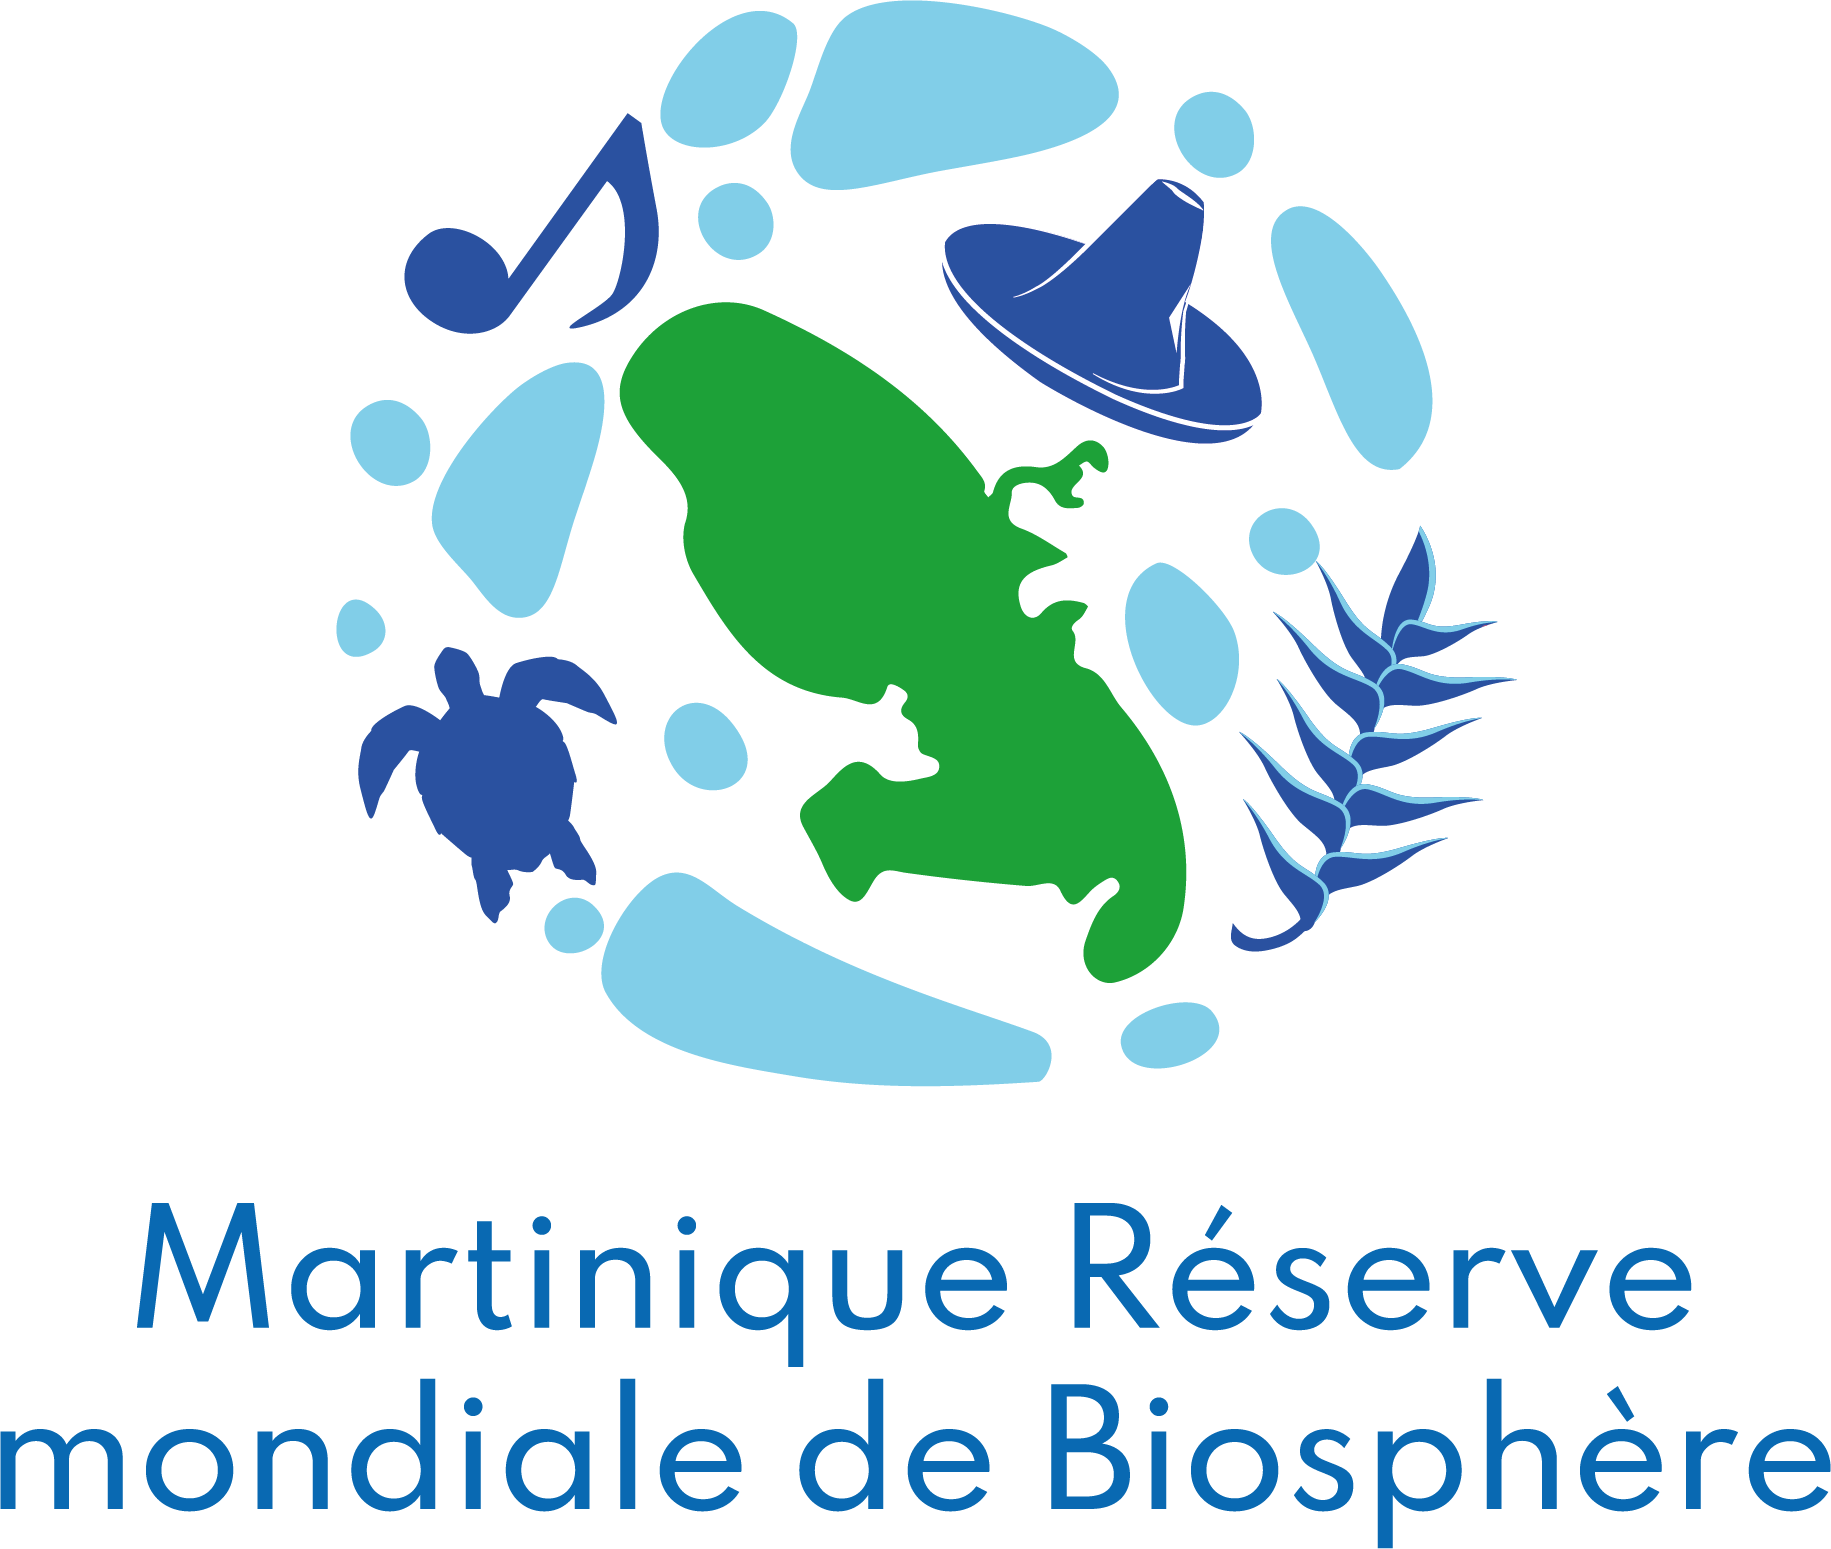 Les premières réunions des Commissions de la Réserve mondiale de Biosphère se sont déroulées en novembre et décembre 2022